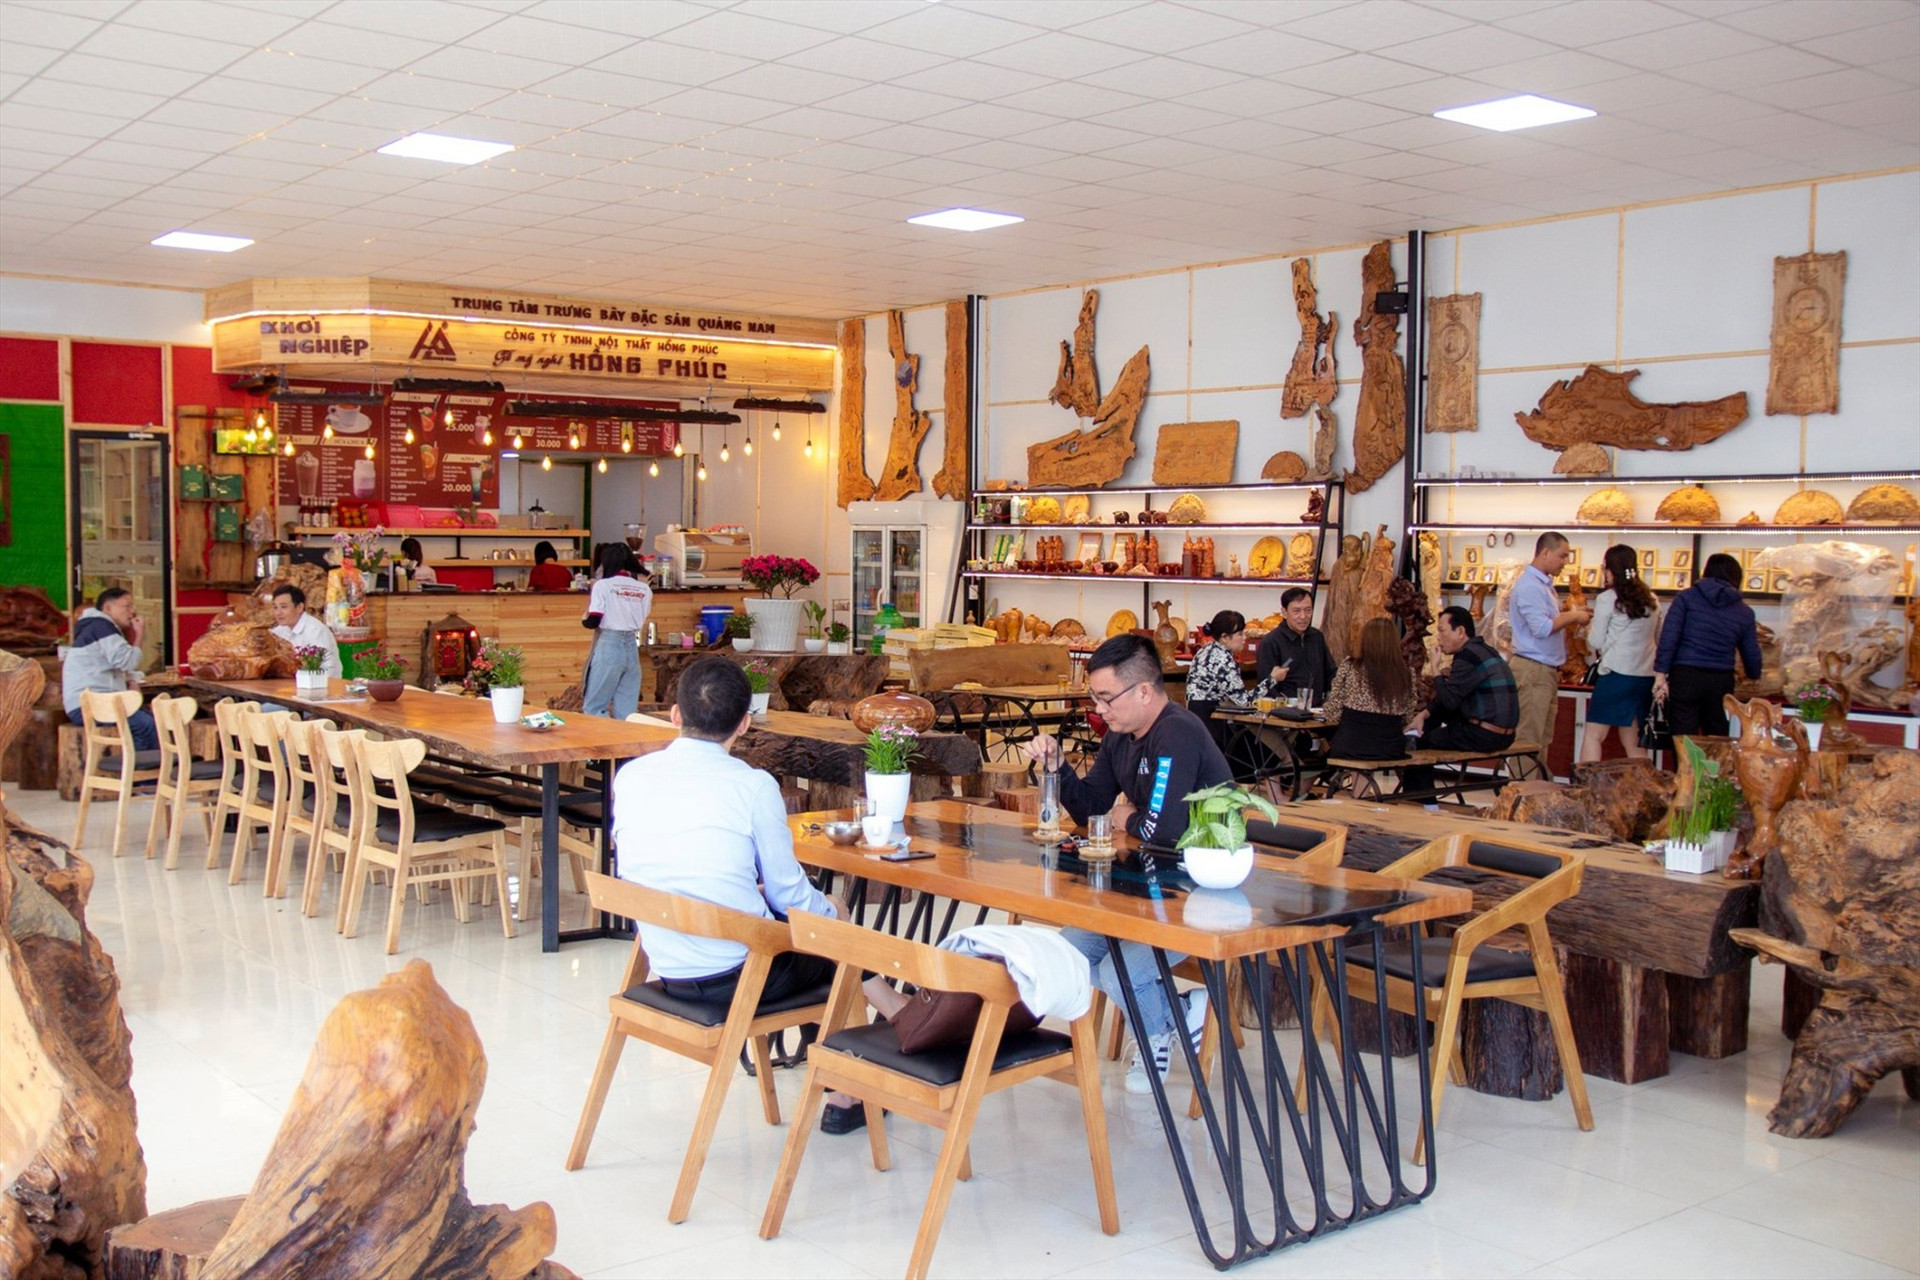 Sản phẩm mỹ nghệ từ quế và từ gỗ lũa, gỗ mục của Công ty Hồng Phúc trưng bày tại quán cà phê Khởi nghiệp. Ảnh: C.N